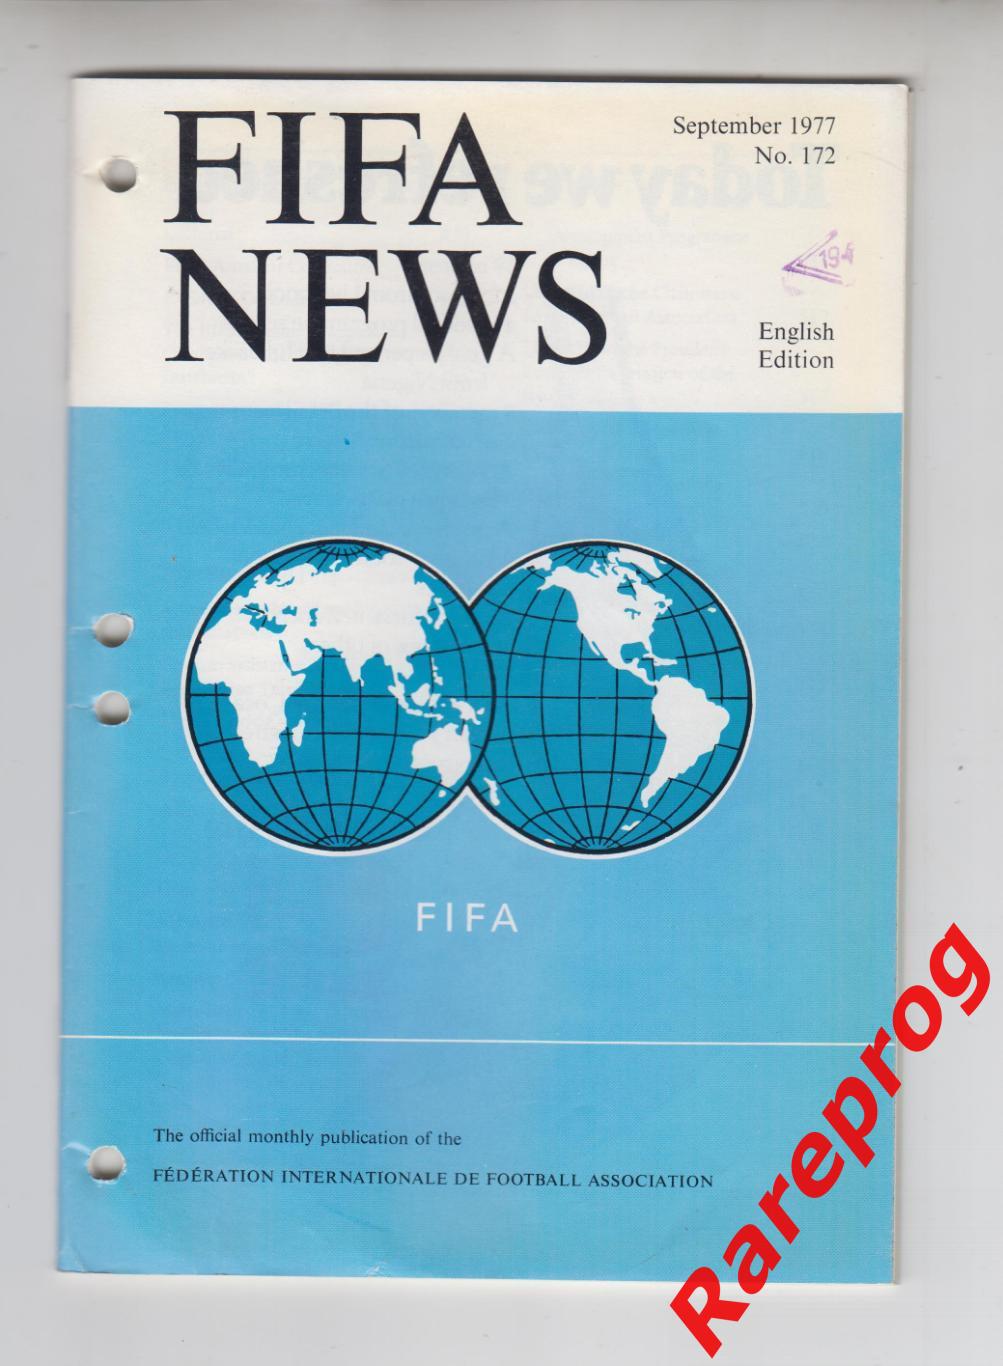 ФИФА НЬЮС НОВОСТИ / FIFA NEWS № 172 1977